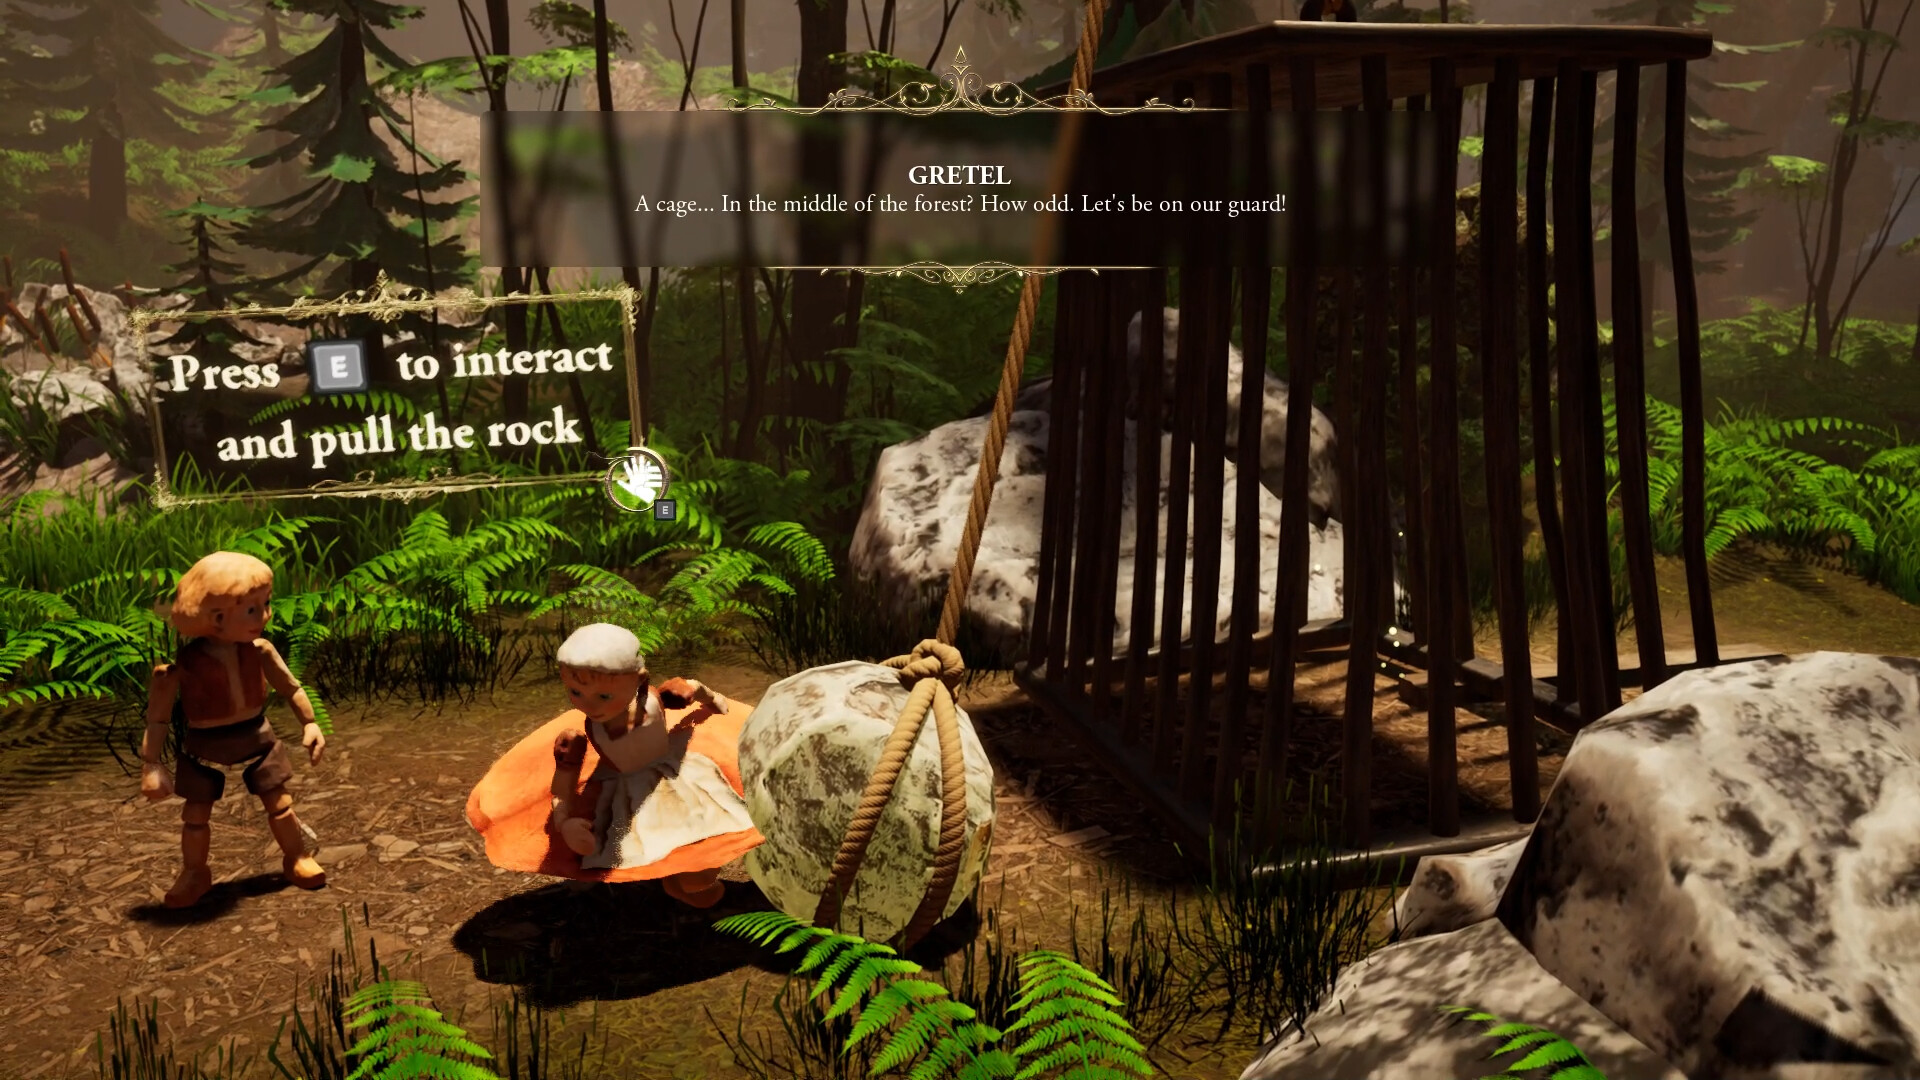 奇幻剧情冒险游戏《往昔童话》现已在Steam平台正式发售